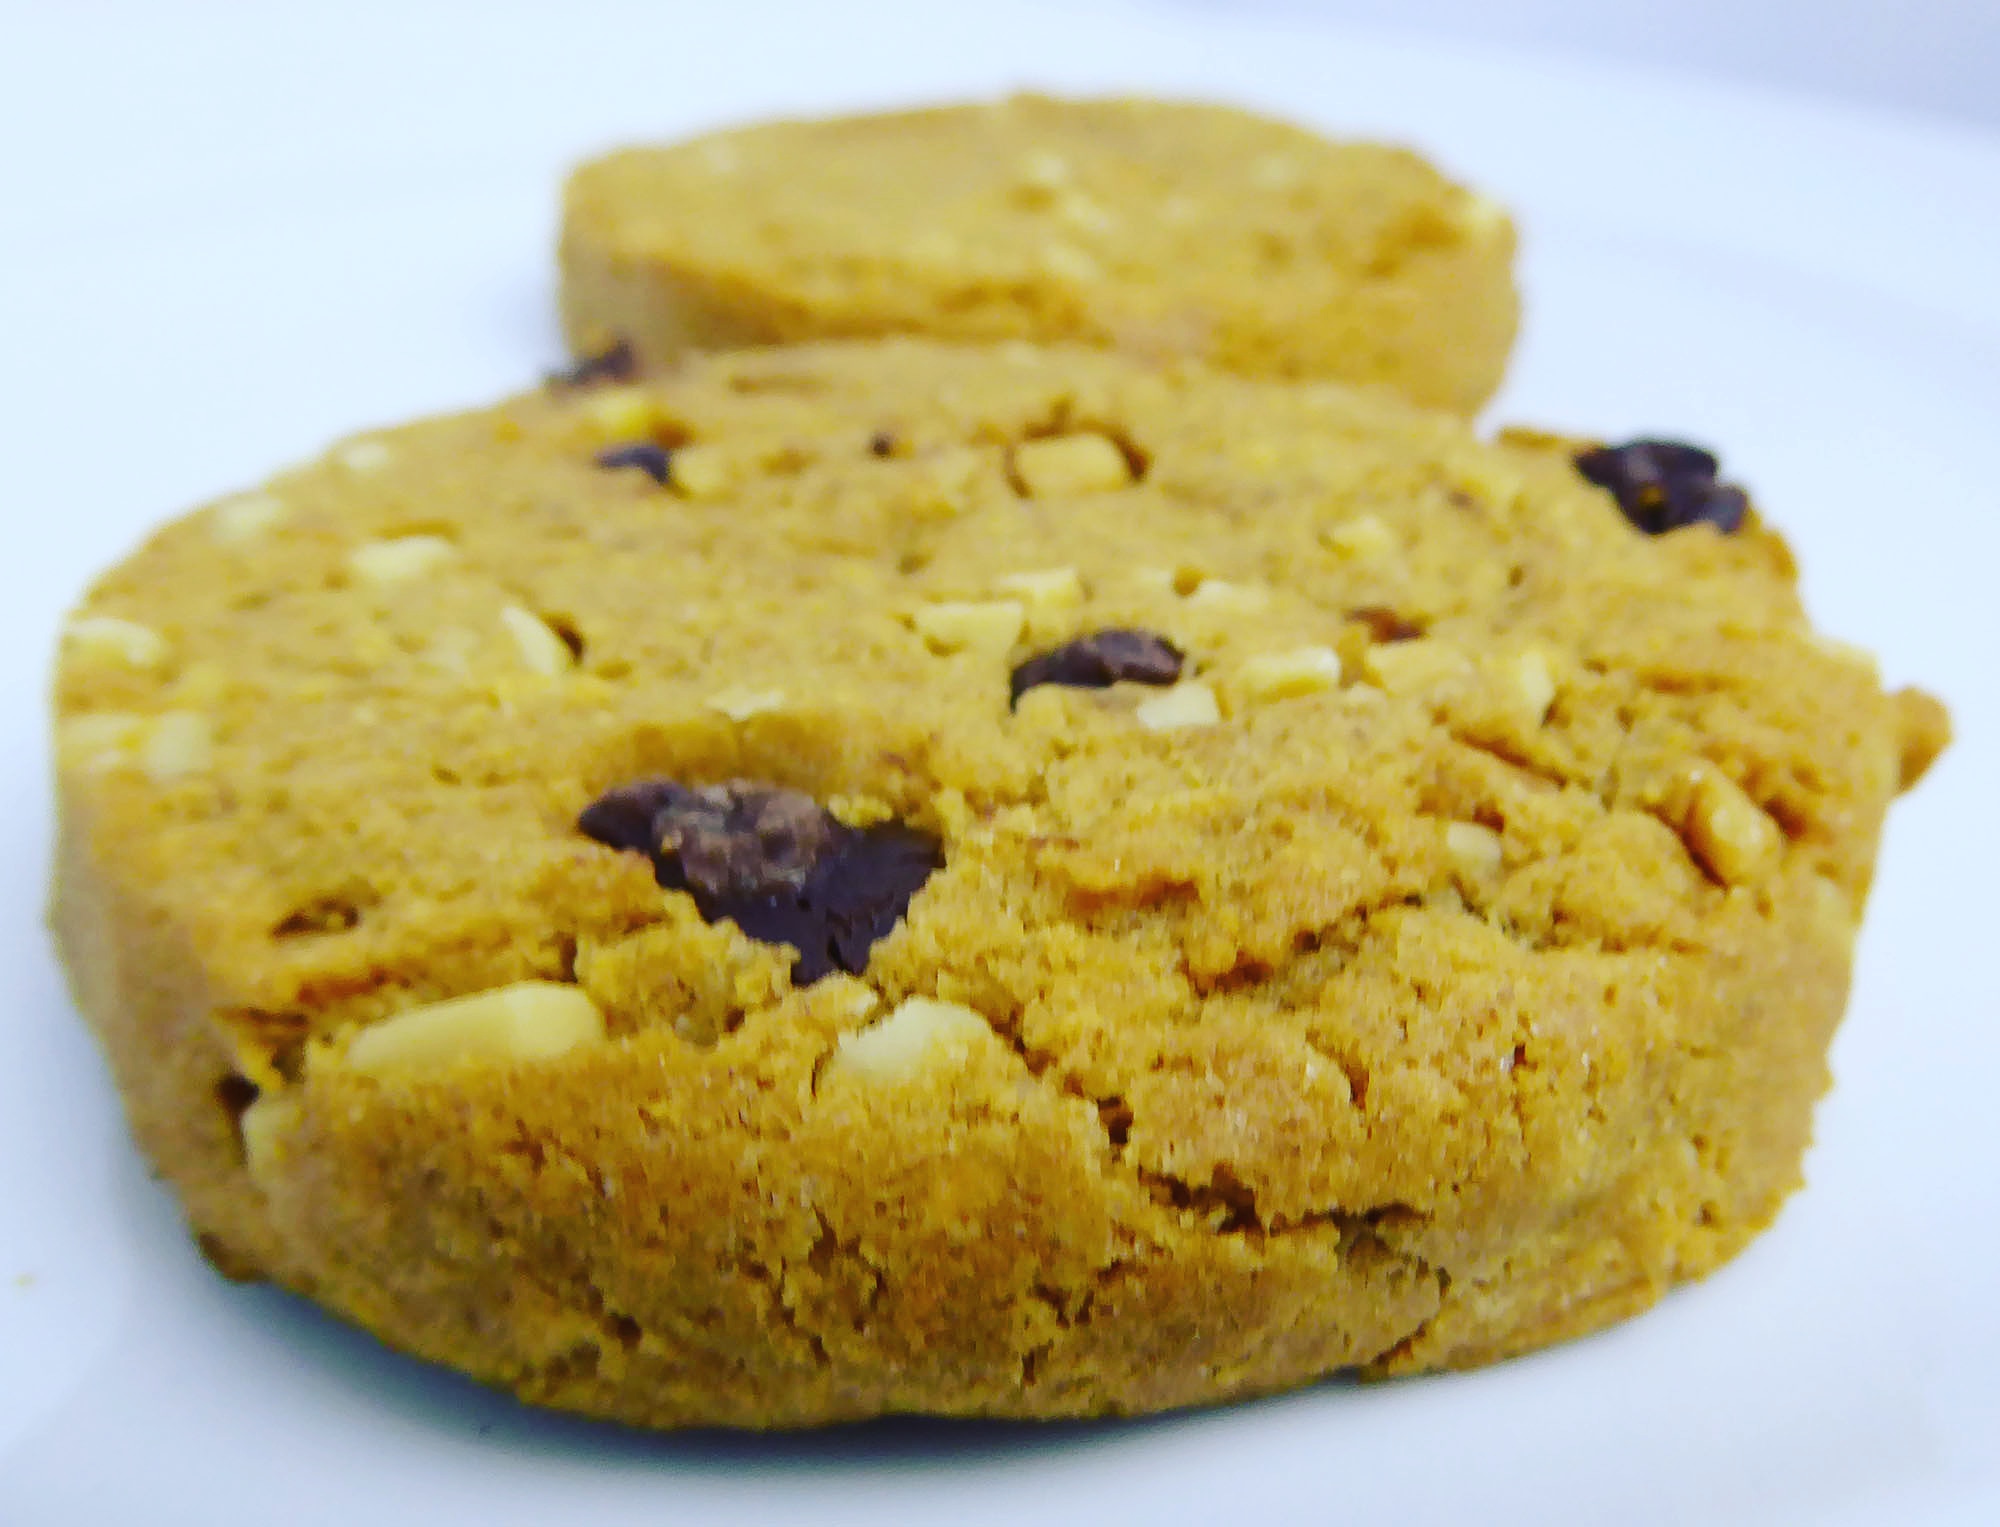 Tri-o-plex Peanut Butter Chocolate cookies Protein Bar Proteinbar Proteinriegel Eiweißriegel